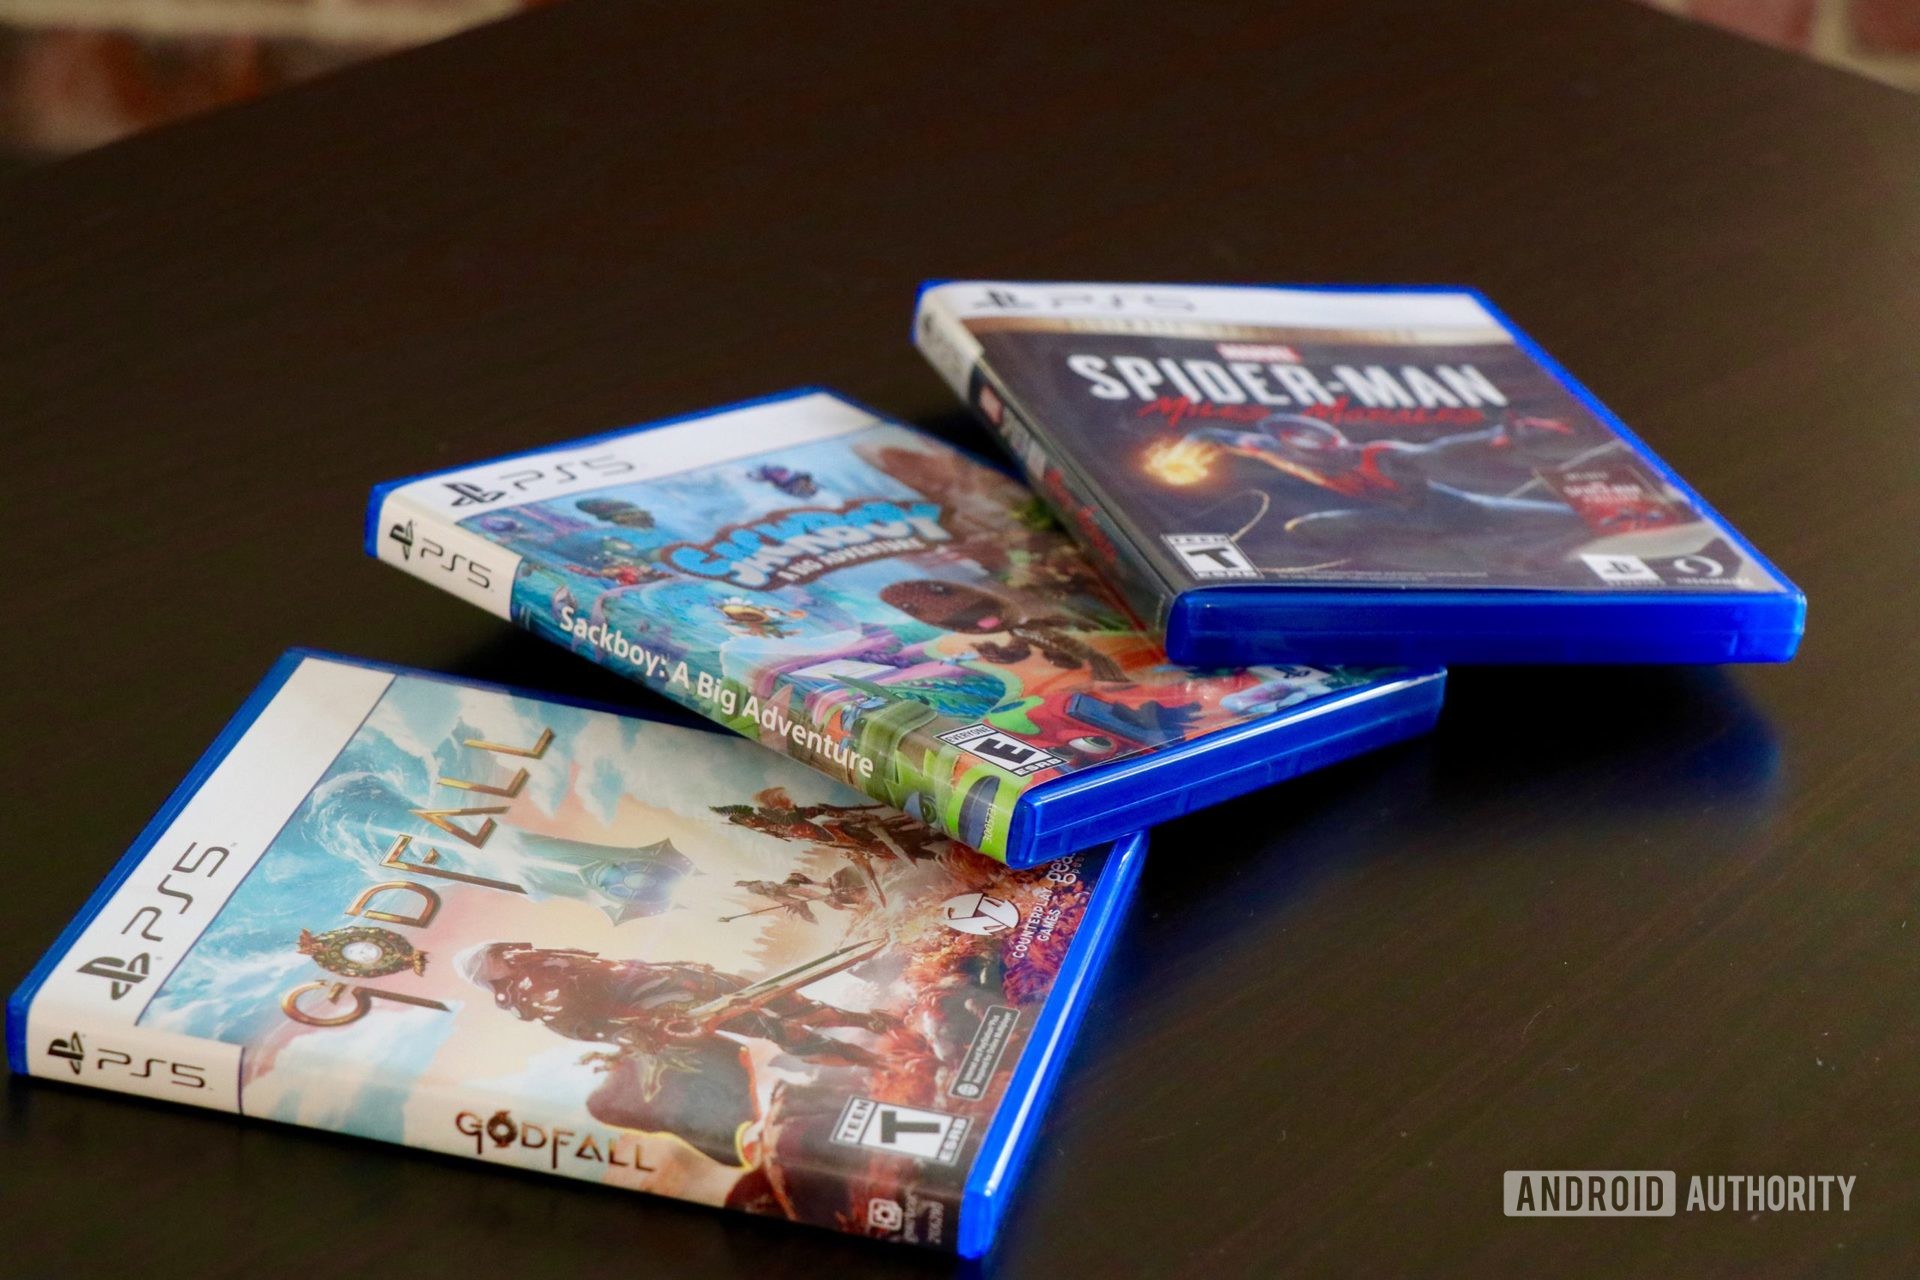 PSN Games (PS4 PS5) - Buy Cheap 